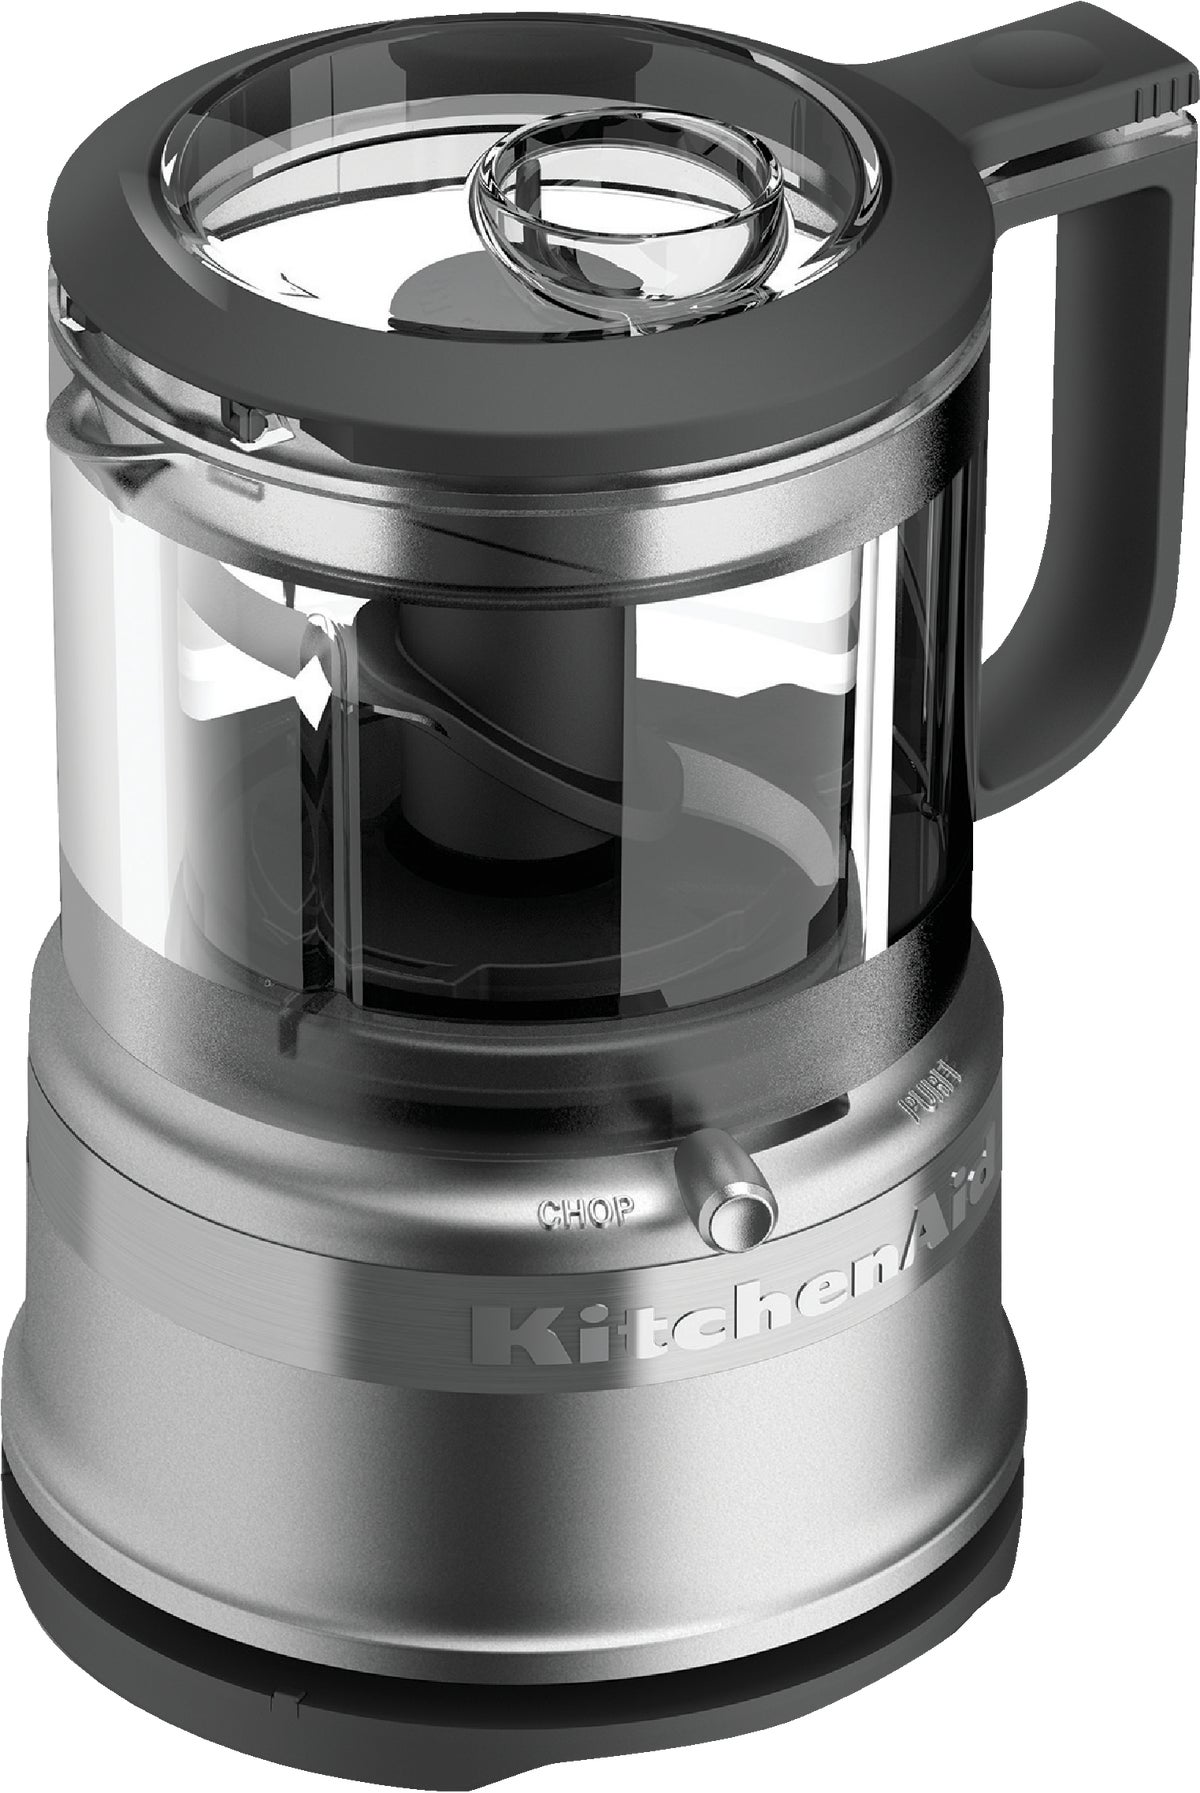 Buy KitchenAid 3.5 Cup Food Processor 3.5 Cup, Silver